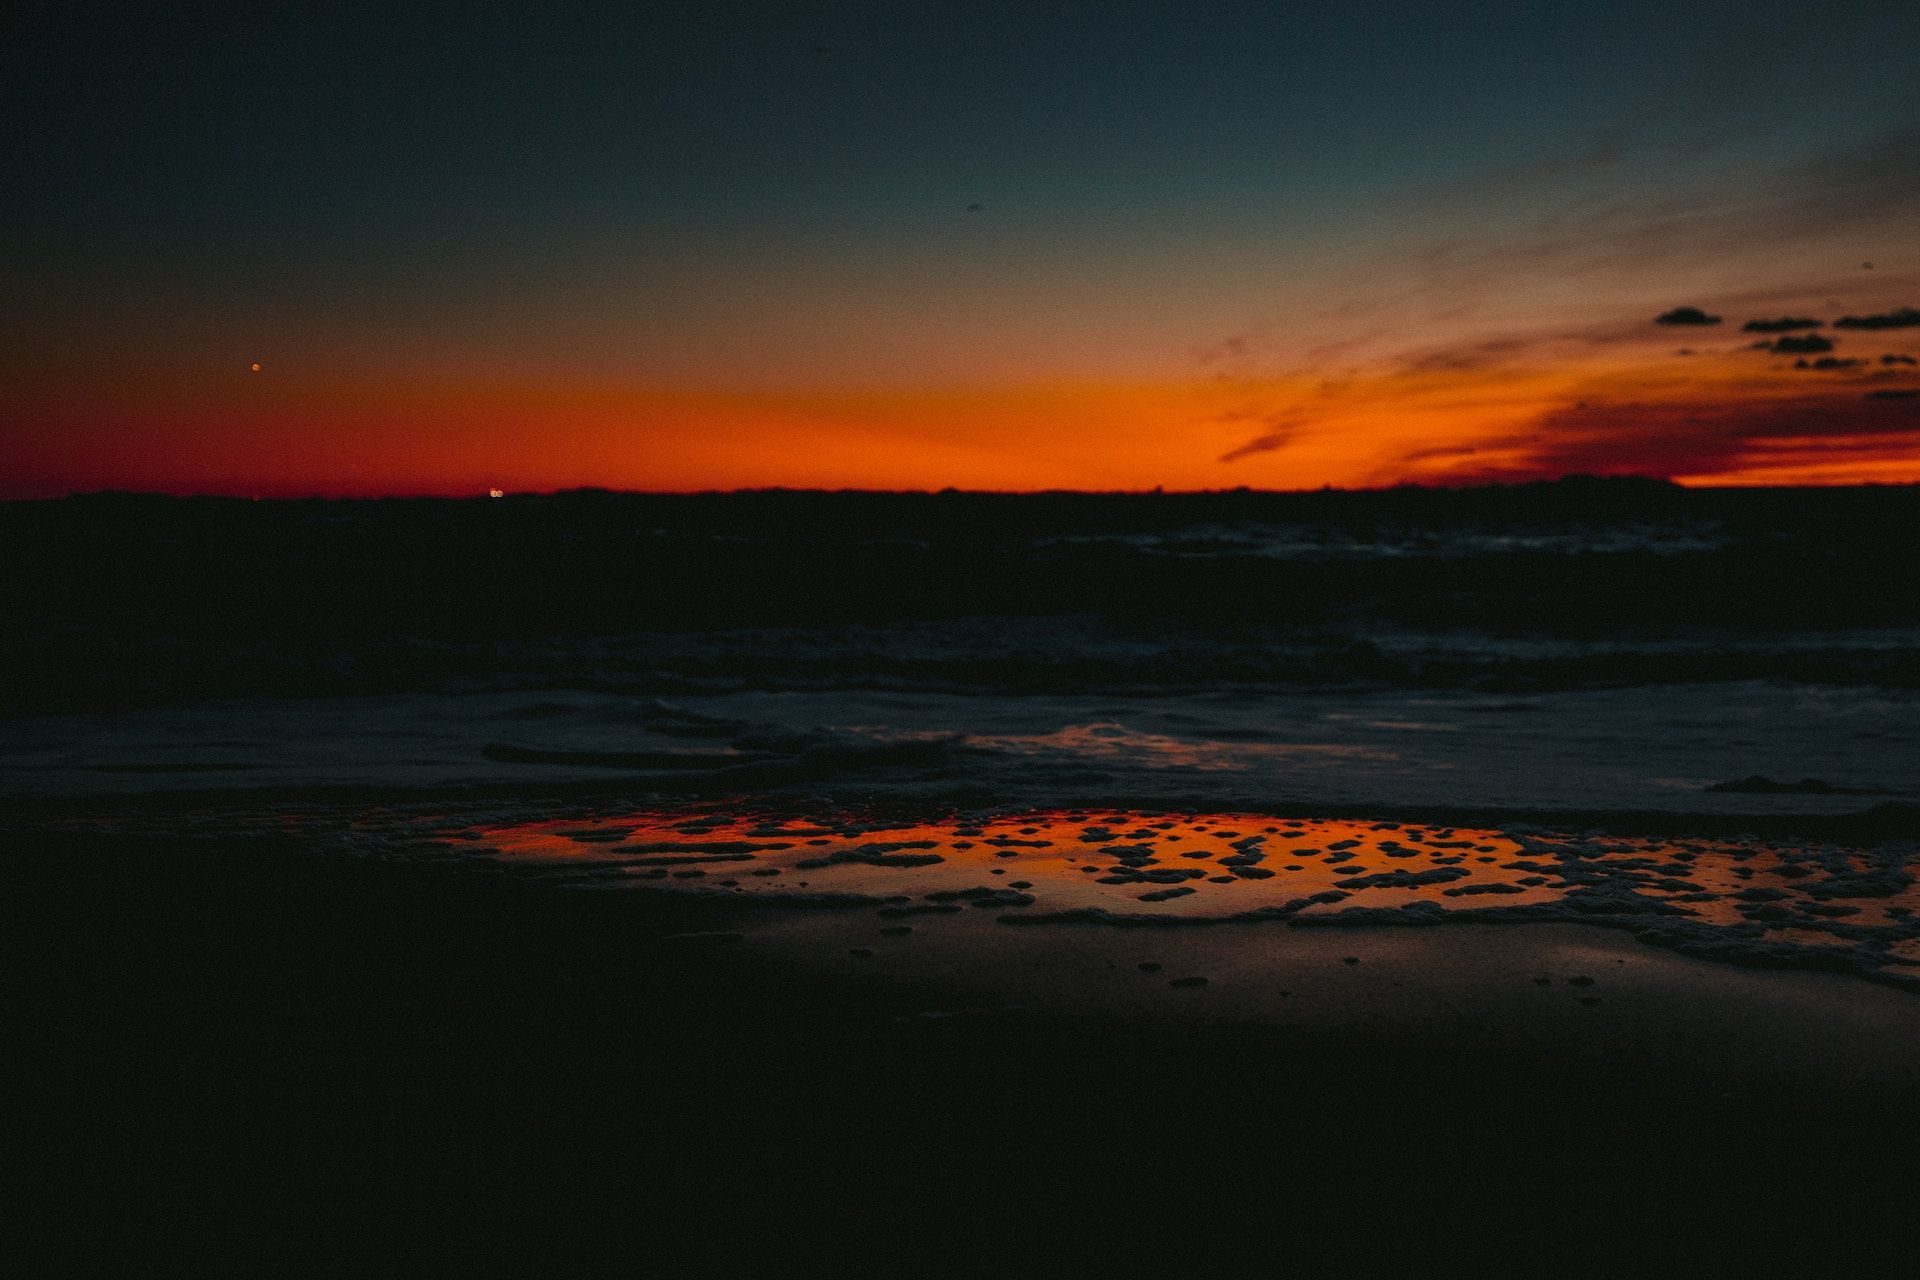 Sunset on a beach in Asbury Park, NJ, USA